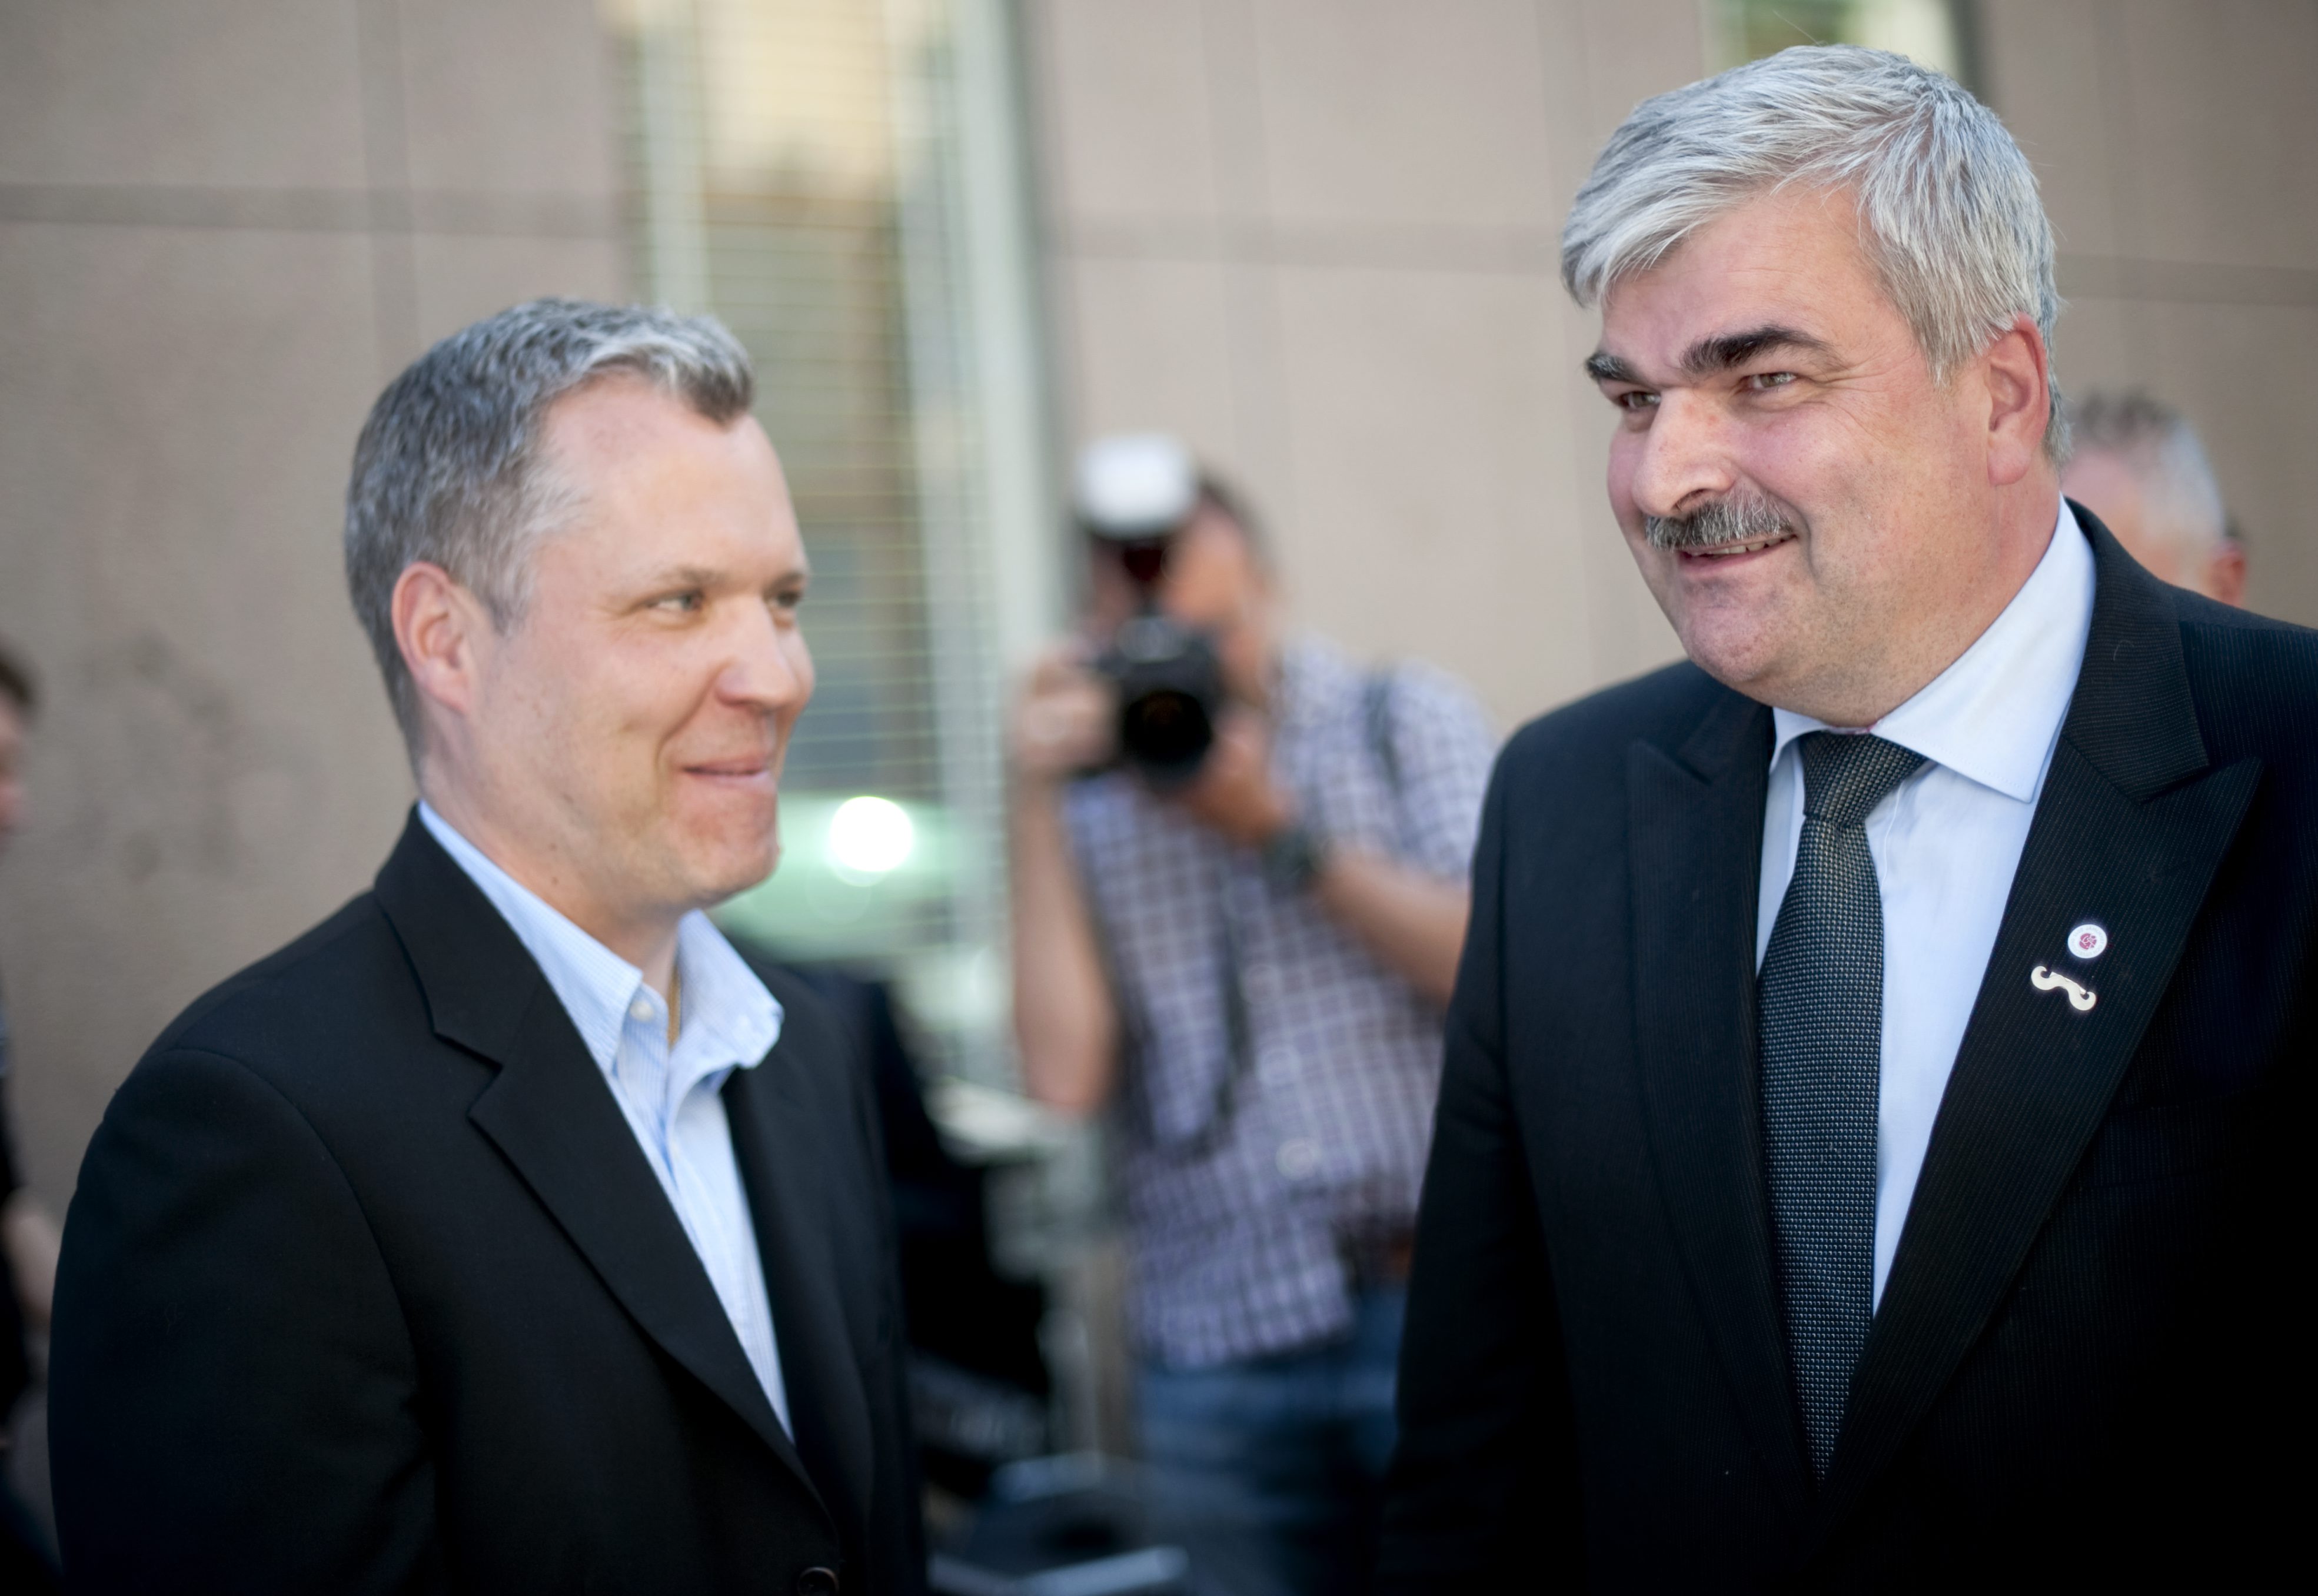 Socialdemokraten Tommy Waidelich får utstå hård kritik från alla håll efter hans uttalande om euron. Här står han med chefen Håkan Juholt.